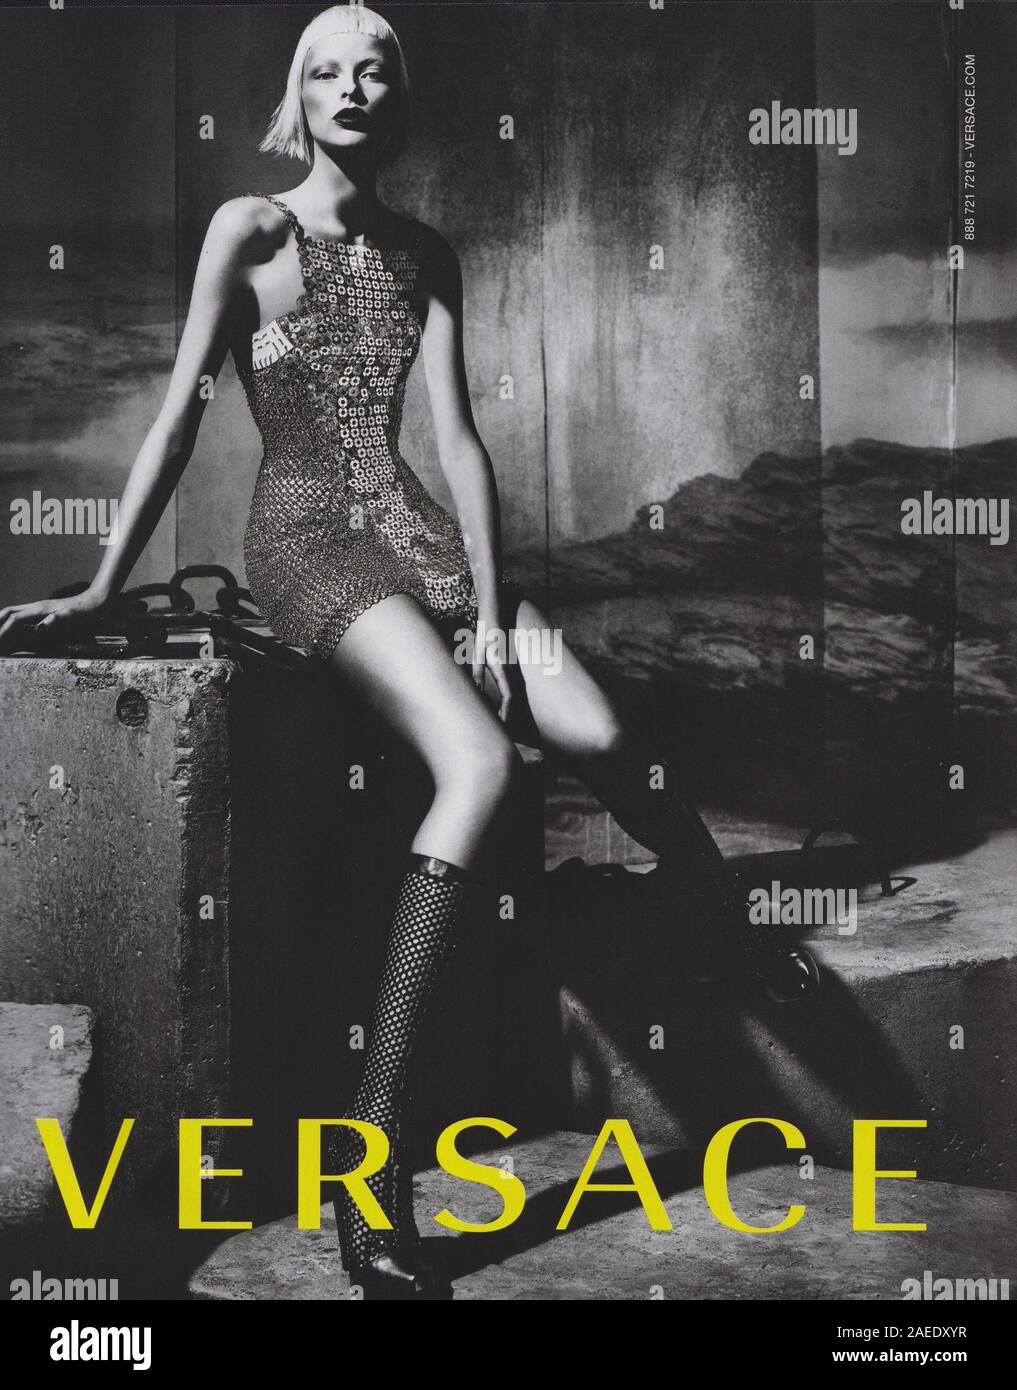 Affiche publicitaire de la maison de couture VERSACE avec Elza Luijendijk dans la version papier du magazine à partir de 2012, année de création publicitaire, publicité VERSACE à partir de 2010s Banque D'Images